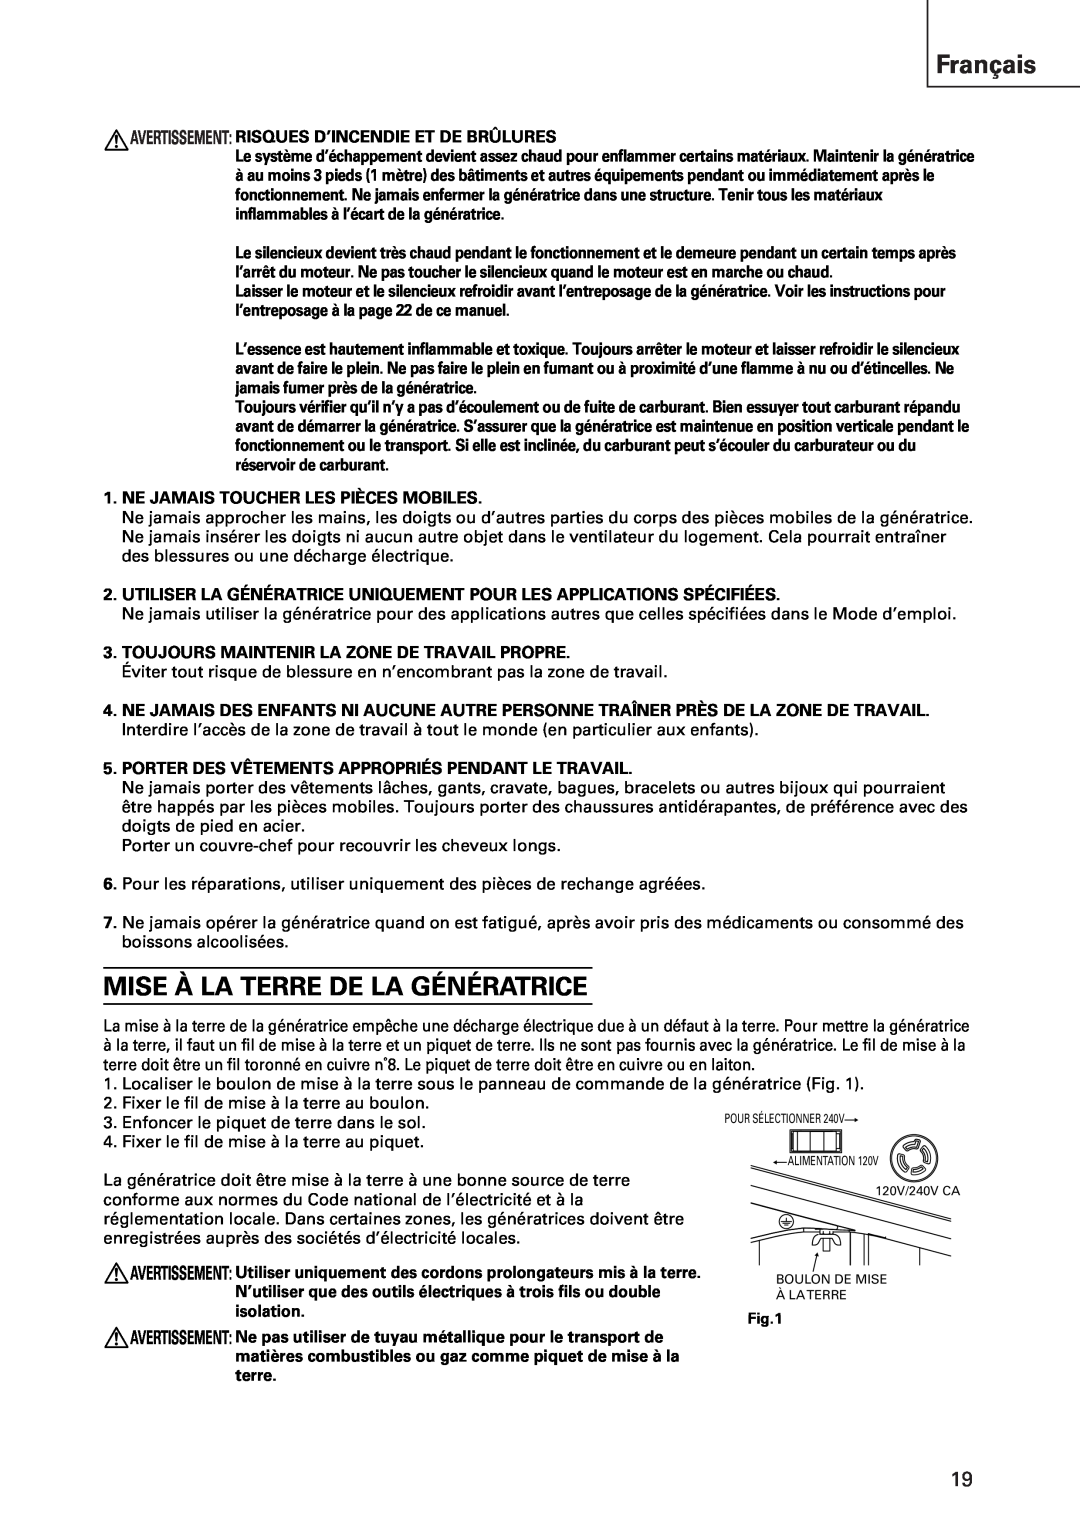 Hitachi E43 instruction manual Français, Mise À La Terre De La Génératrice 